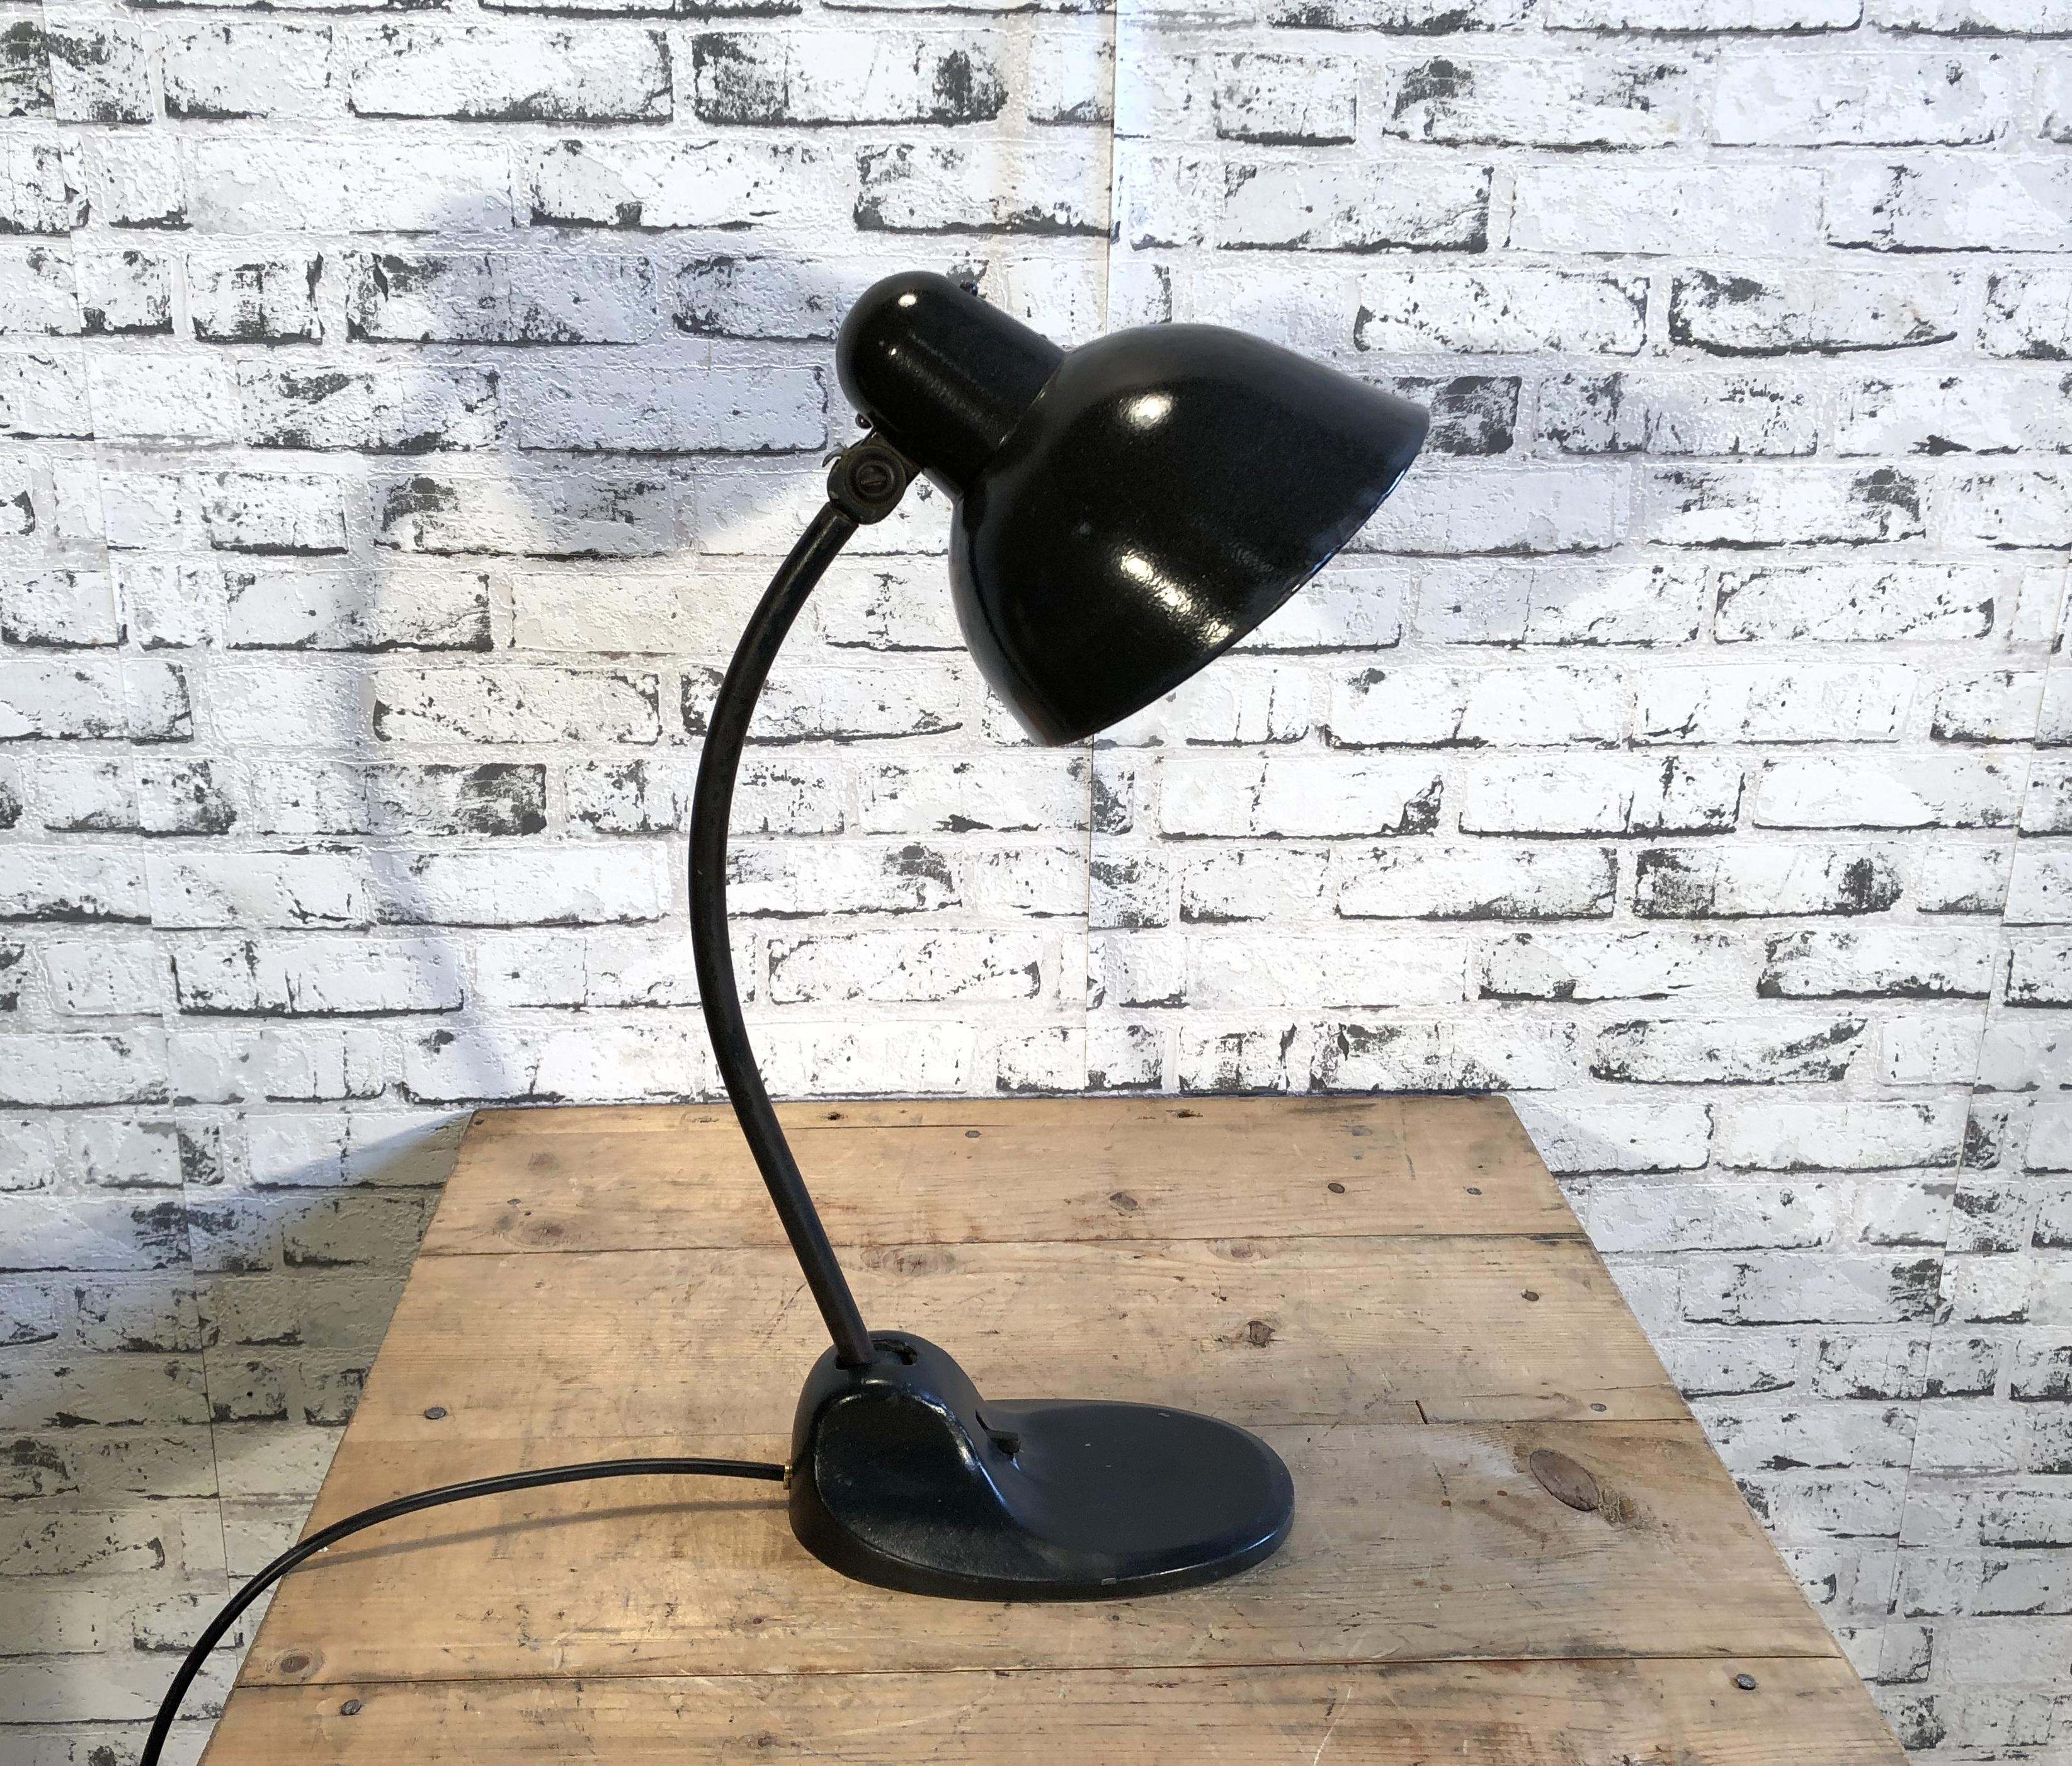 Enameled Black Enamel Bauhaus Industrial Desk Lamp From Siemens, 1930s